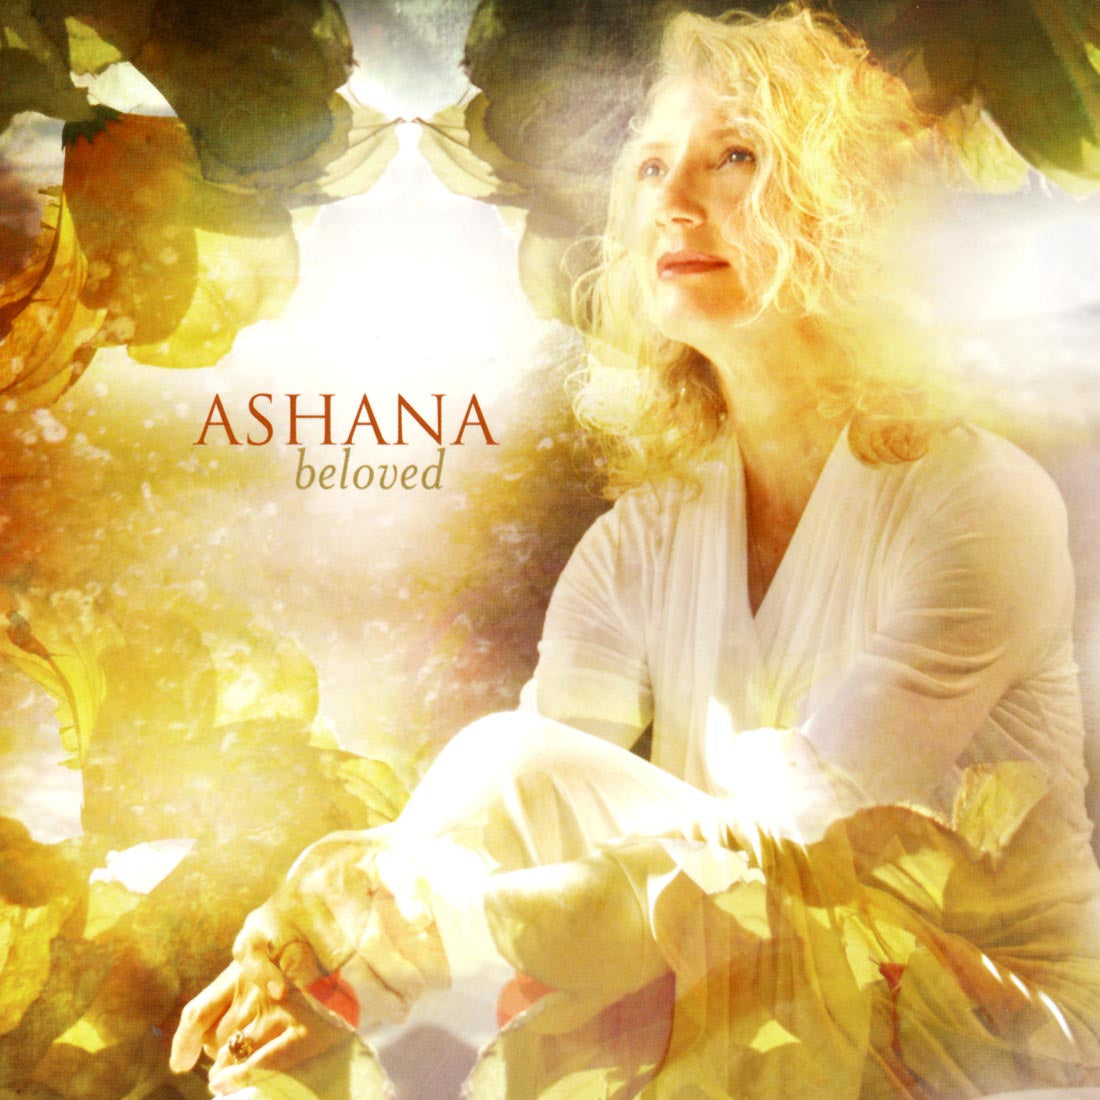 Opening to Love - Ashana